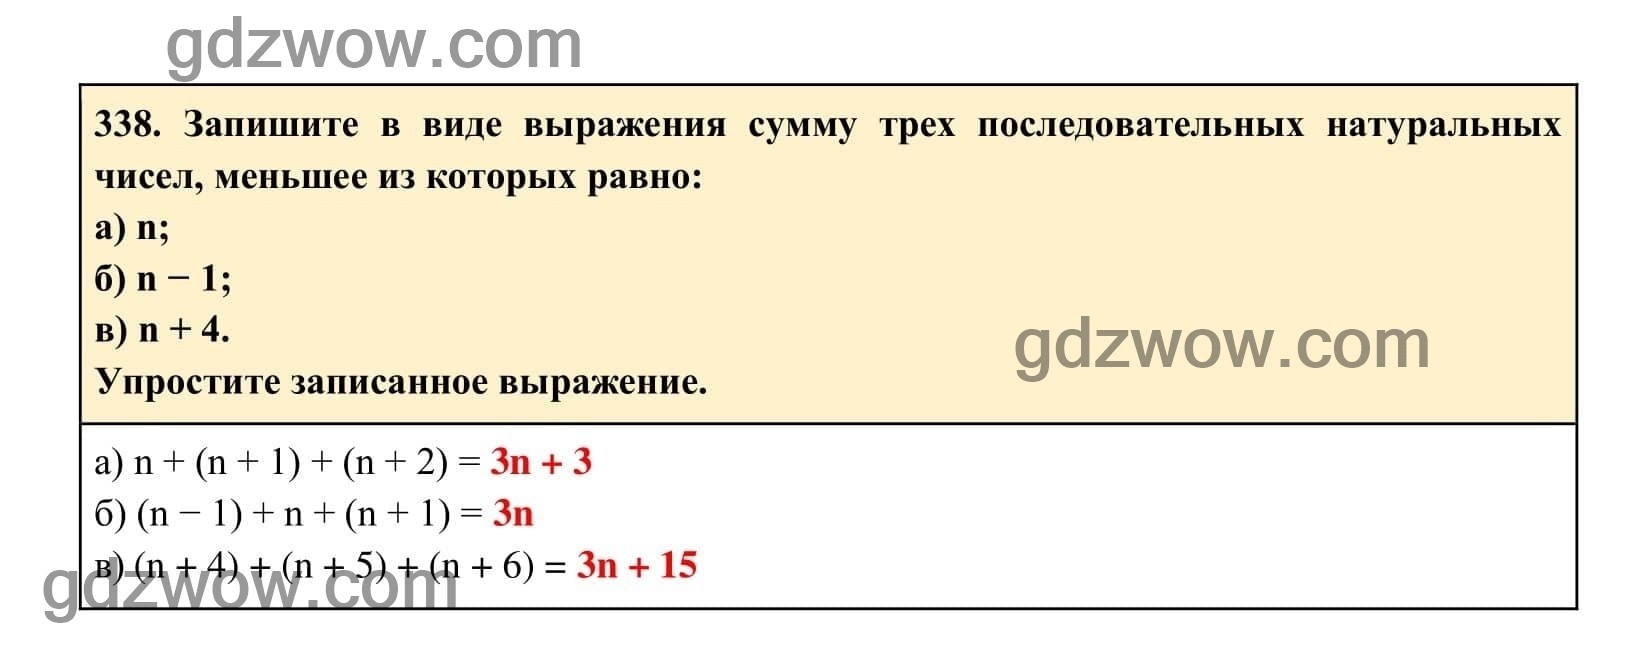 Упражнение 338 - ГДЗ по Алгебре 7 класс Учебник Макарычев (решебник) - GDZwow